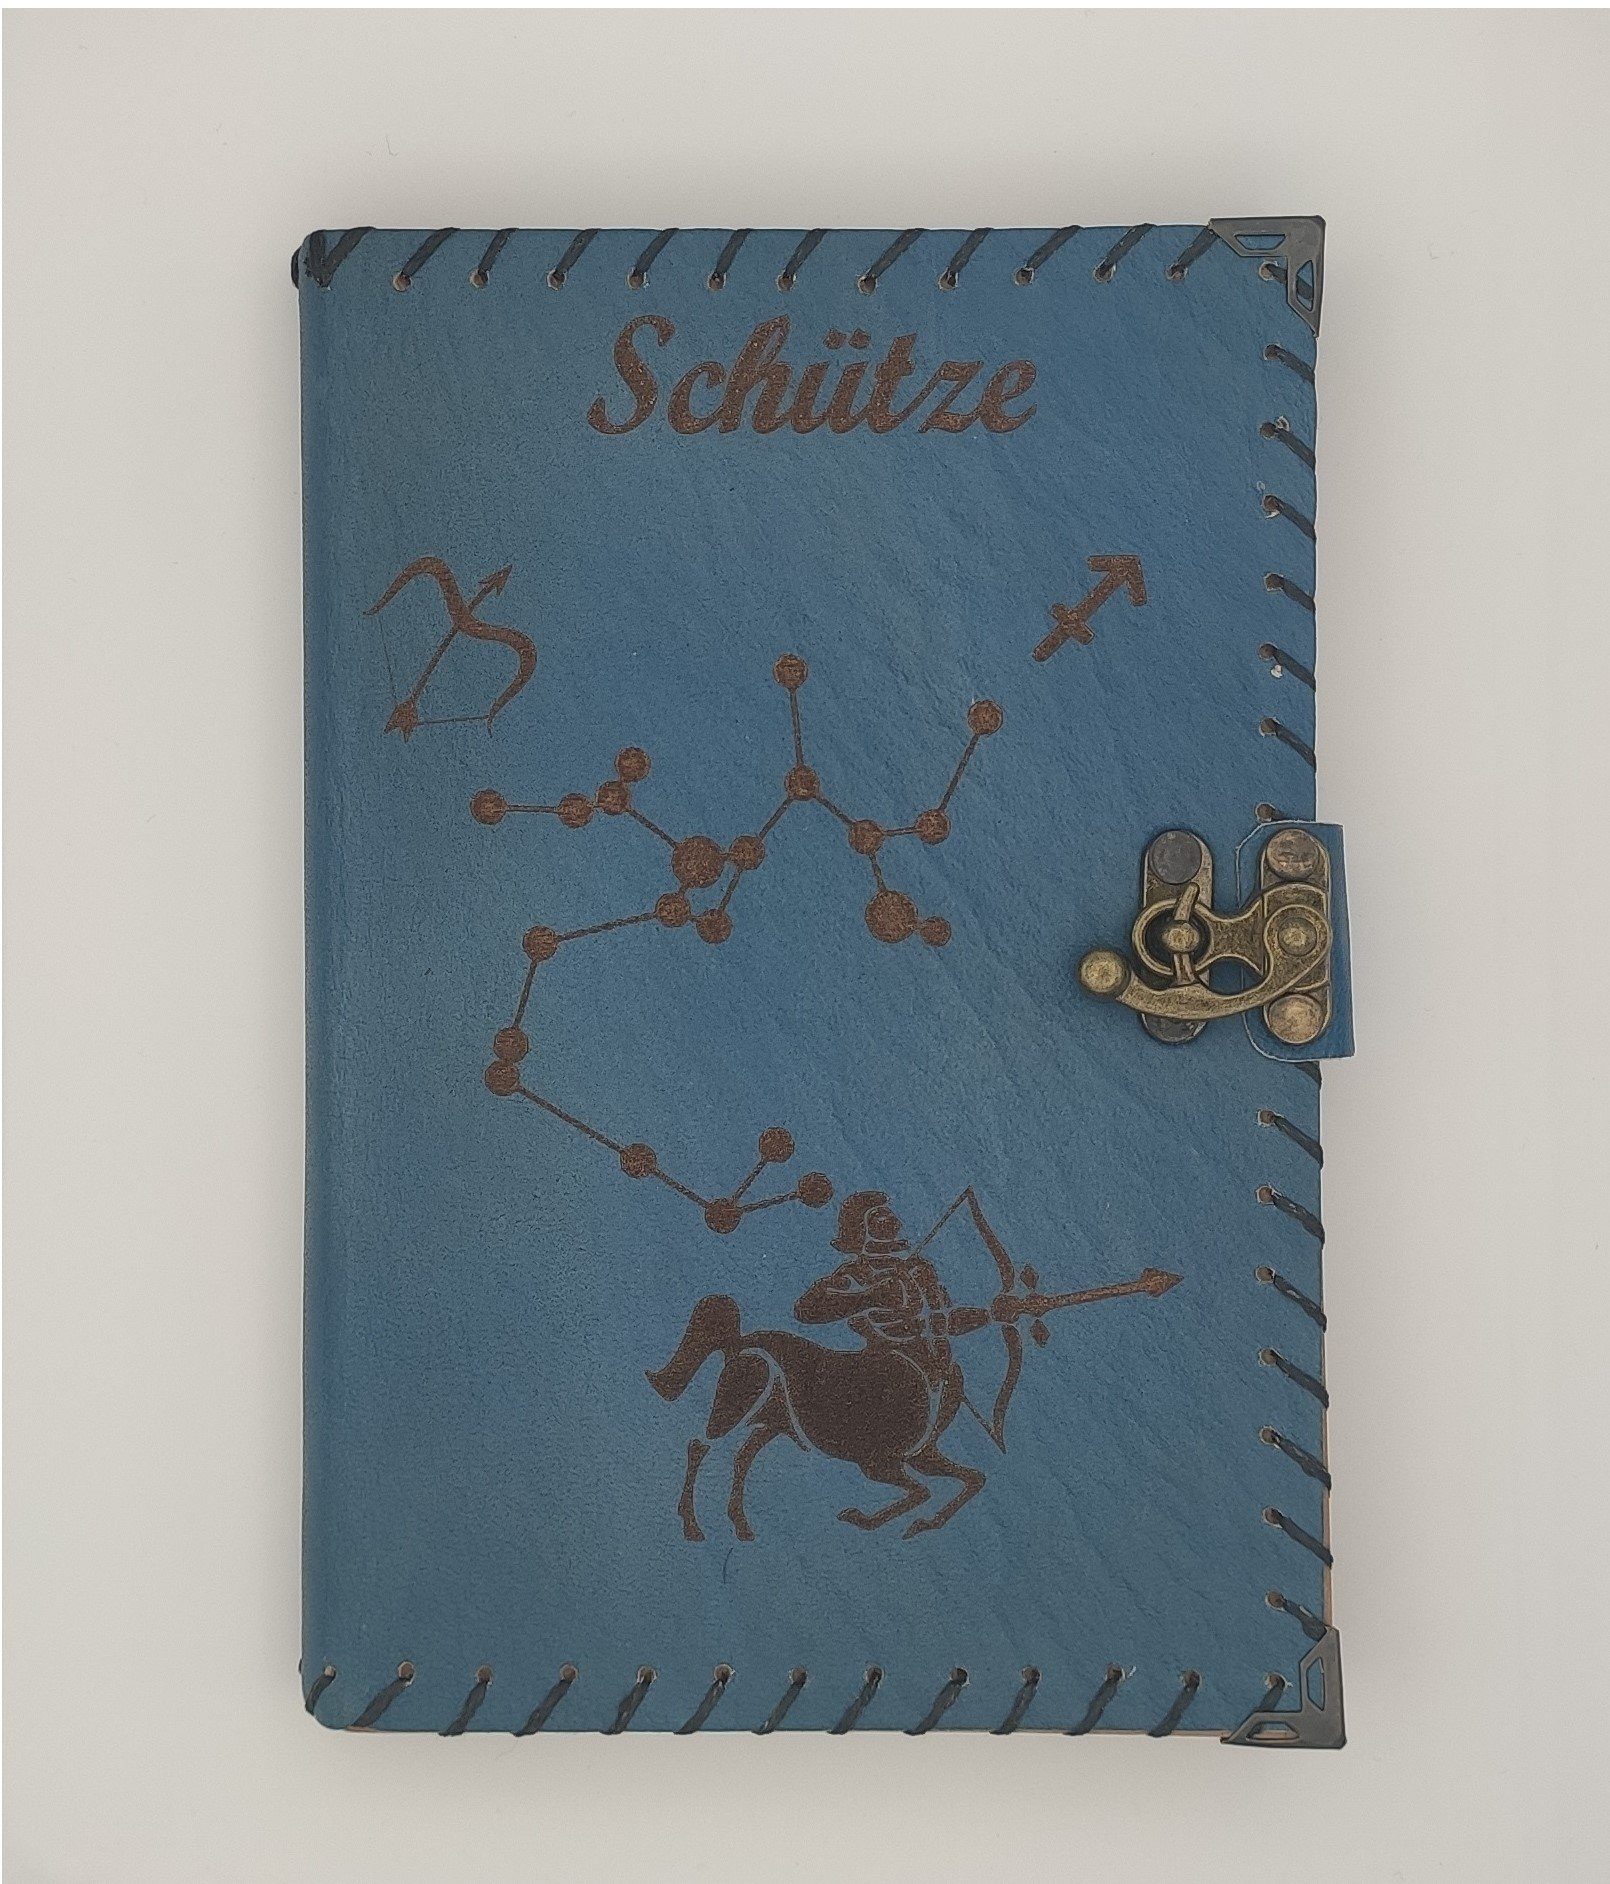 aus QUAMOD (12 Tagebuch Journal, Sternzeichen echtem Blau Design) Notizbuch Leder Tagebuch Handgefertigt